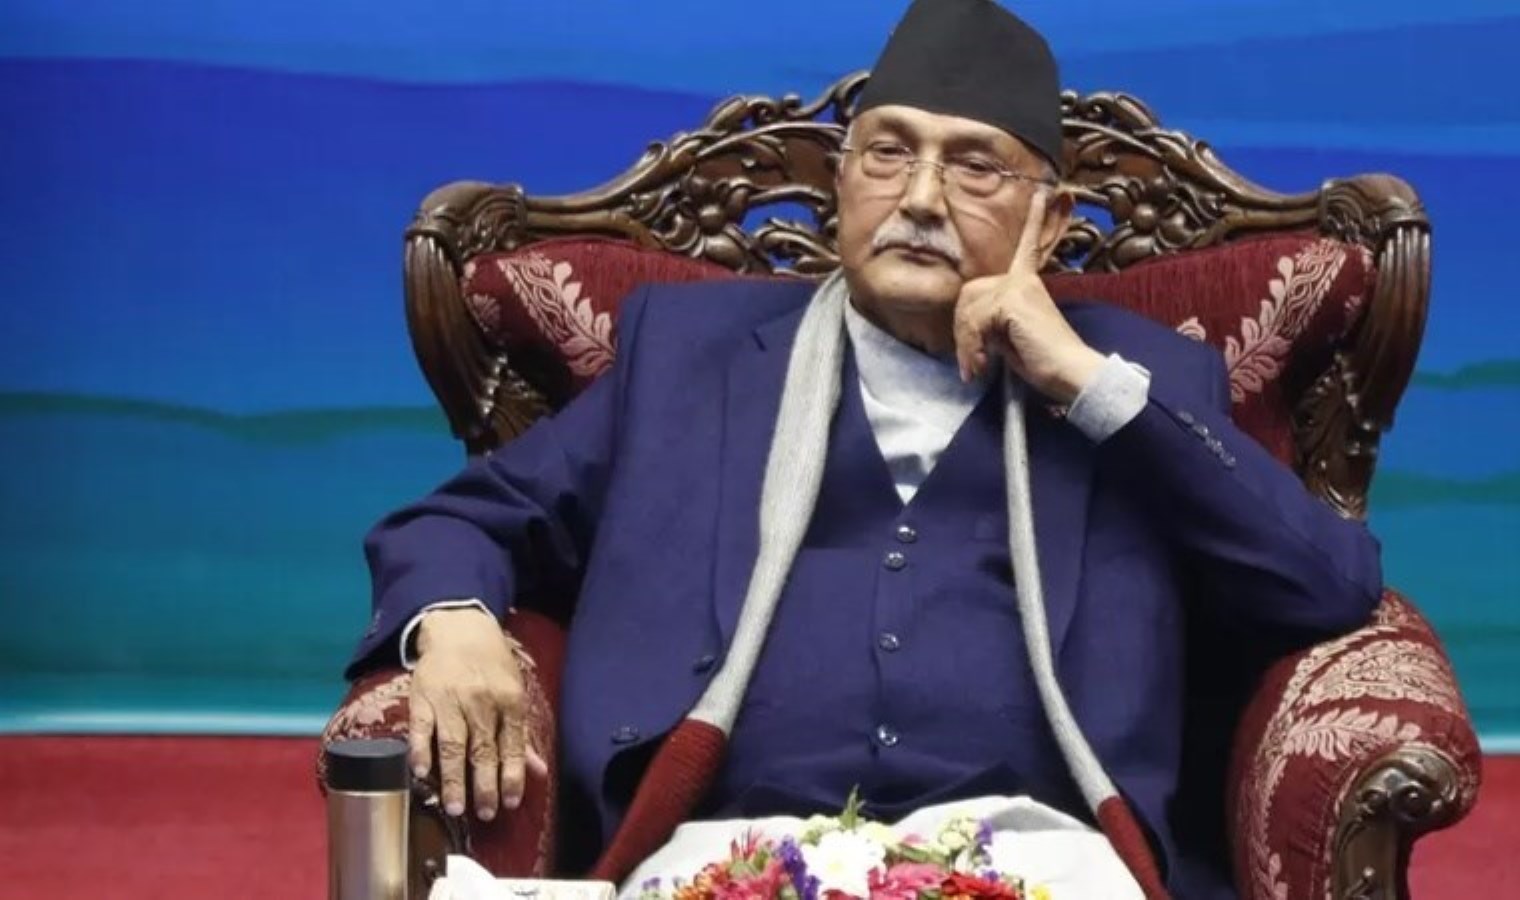 Nepal’in yeni başbakanı göreve başladı